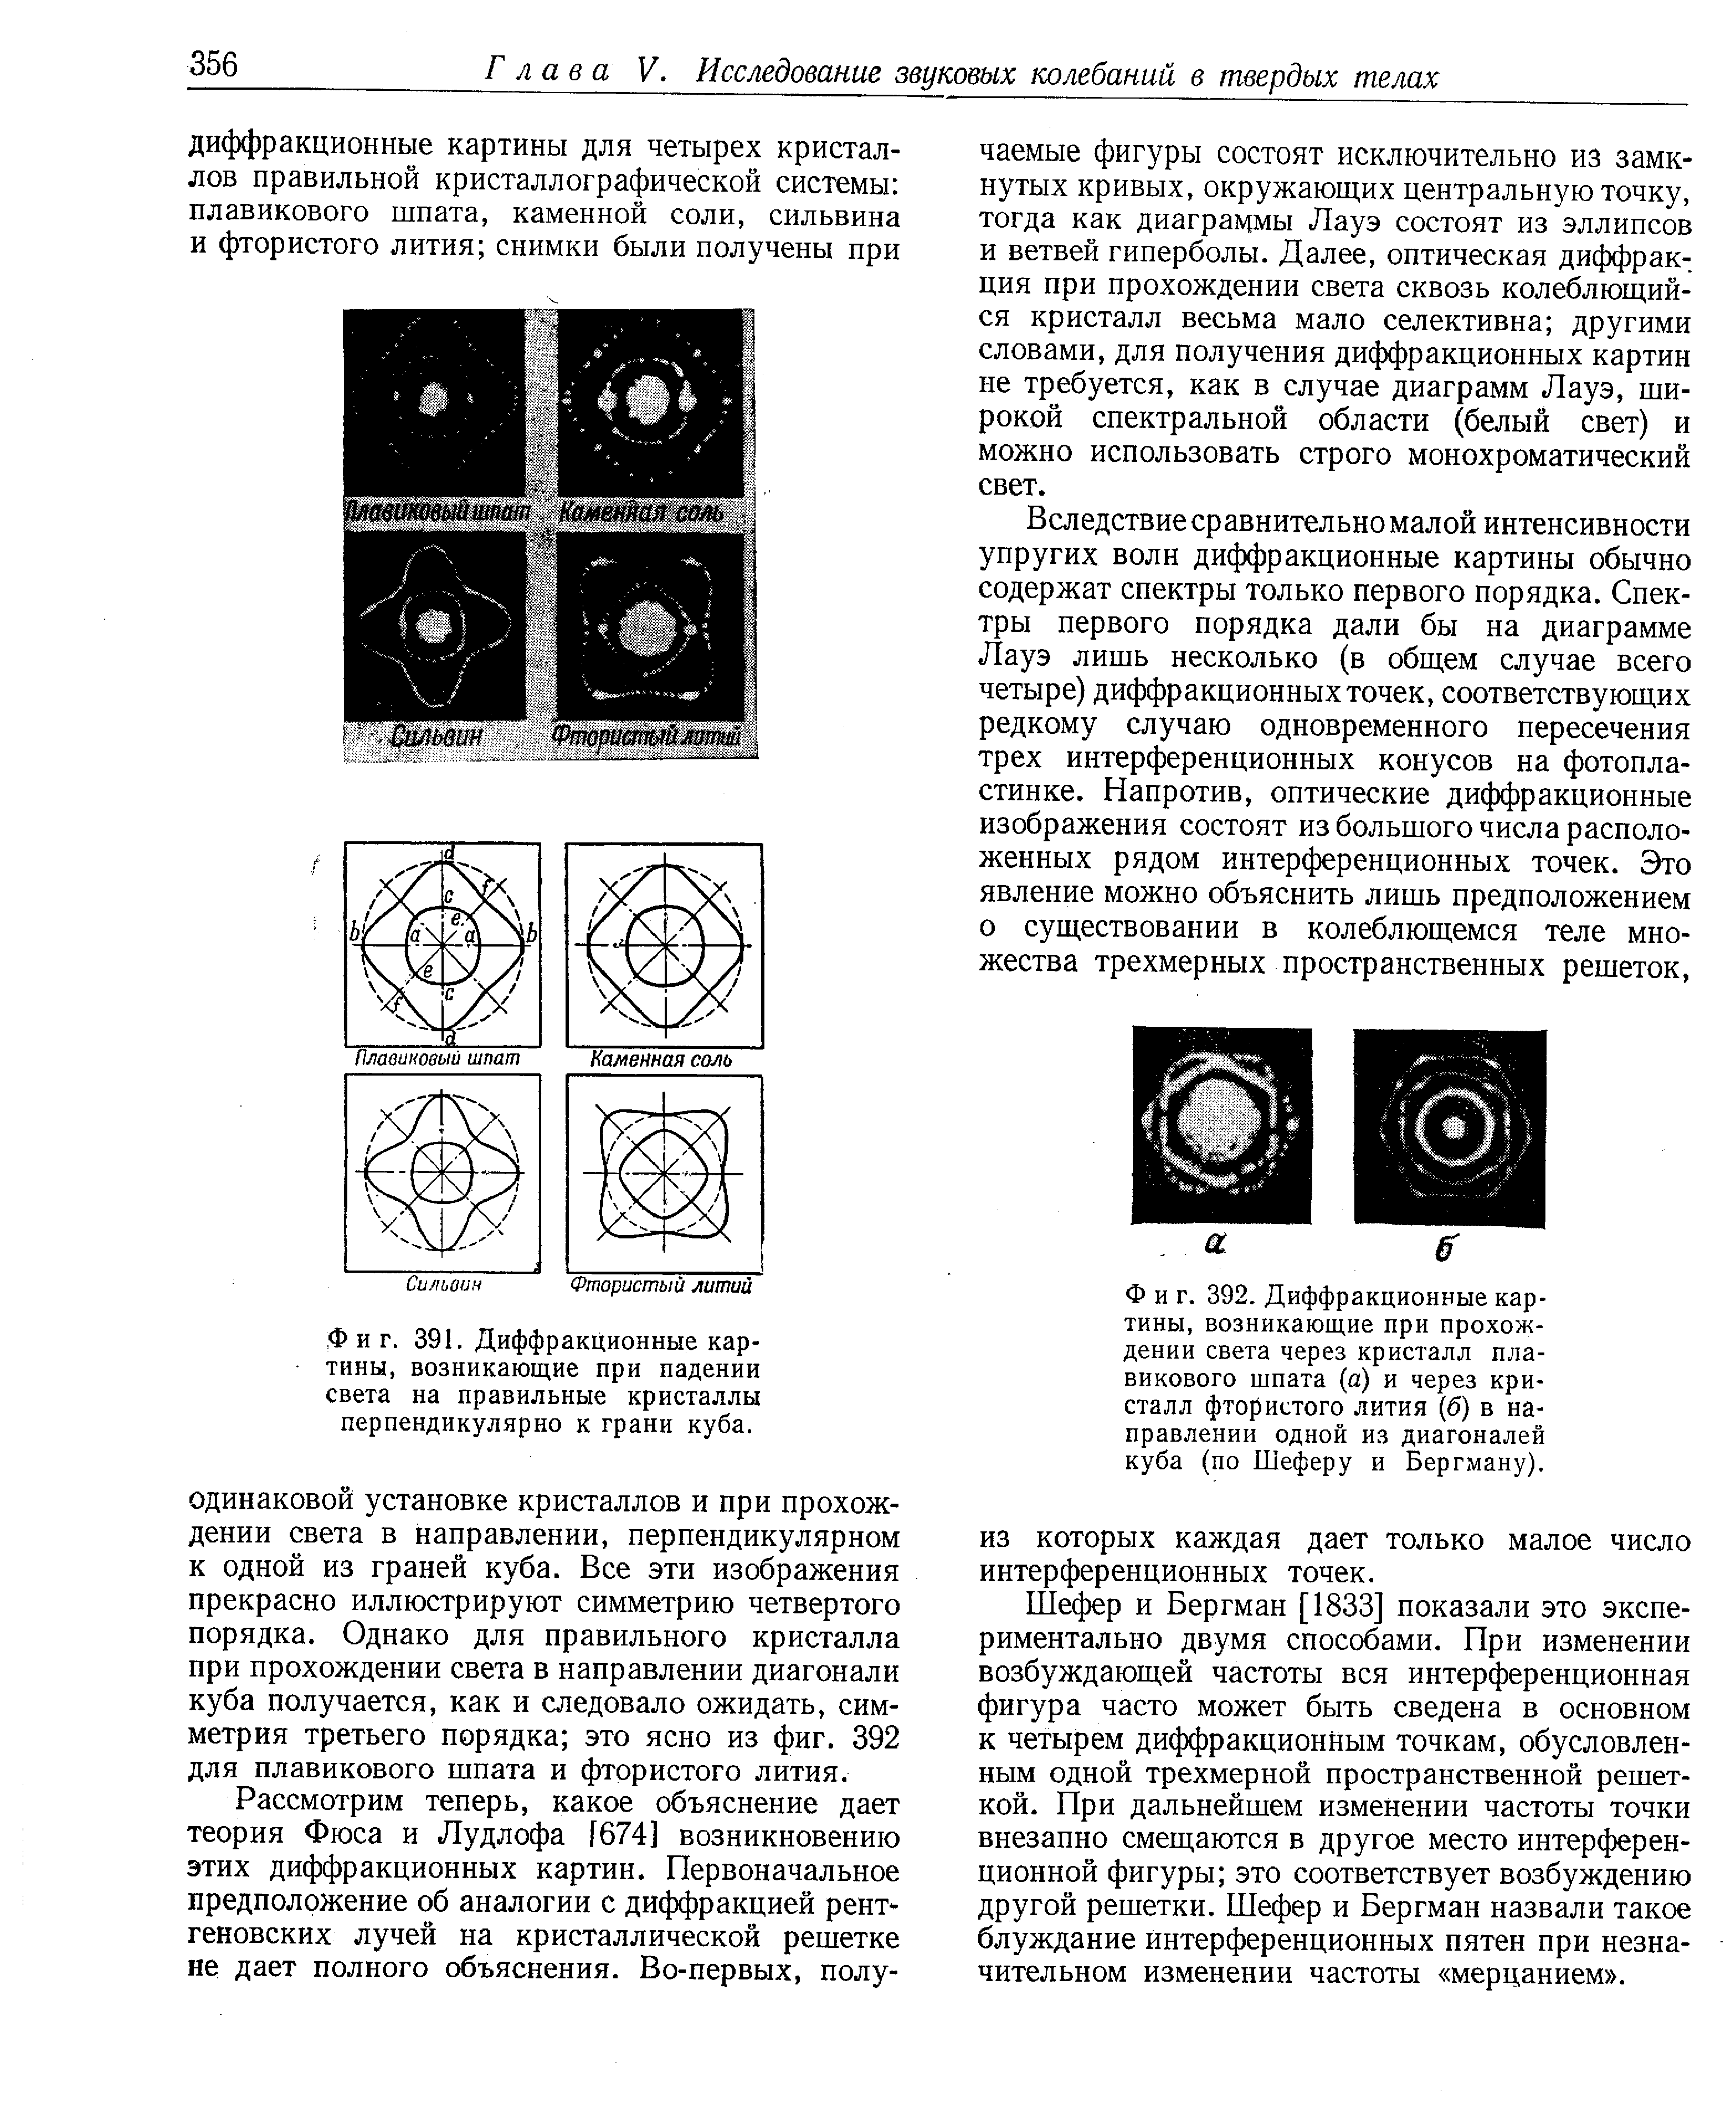 Фиг. 392. Диффракционные картины, возникающие при прохождении света через кристалл <a href="/info/64006">плавикового шпата</a> (а) и через кристалл <a href="/info/18093">фтористого лития</a> (б) в направлении одной из диагоналей куба (по Шеферу и Бергману).
